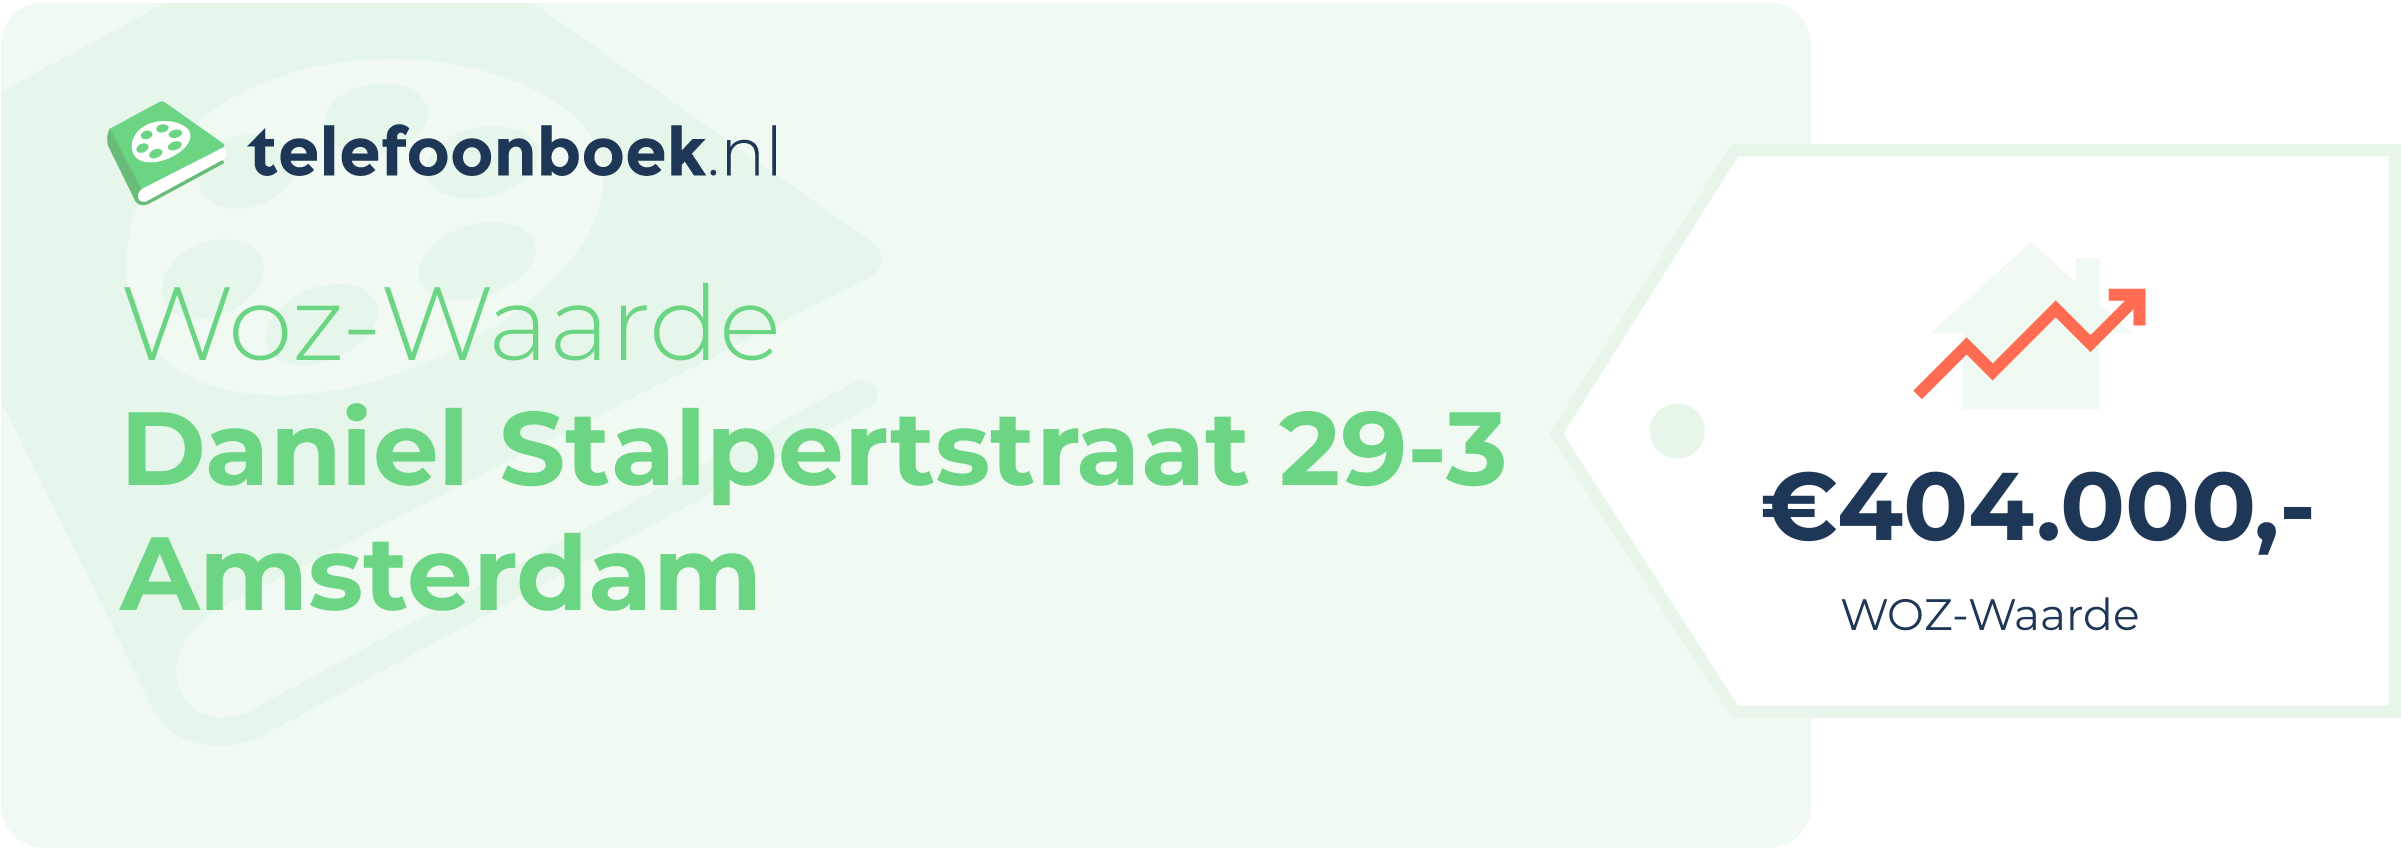 WOZ-waarde Daniel Stalpertstraat 29-3 Amsterdam